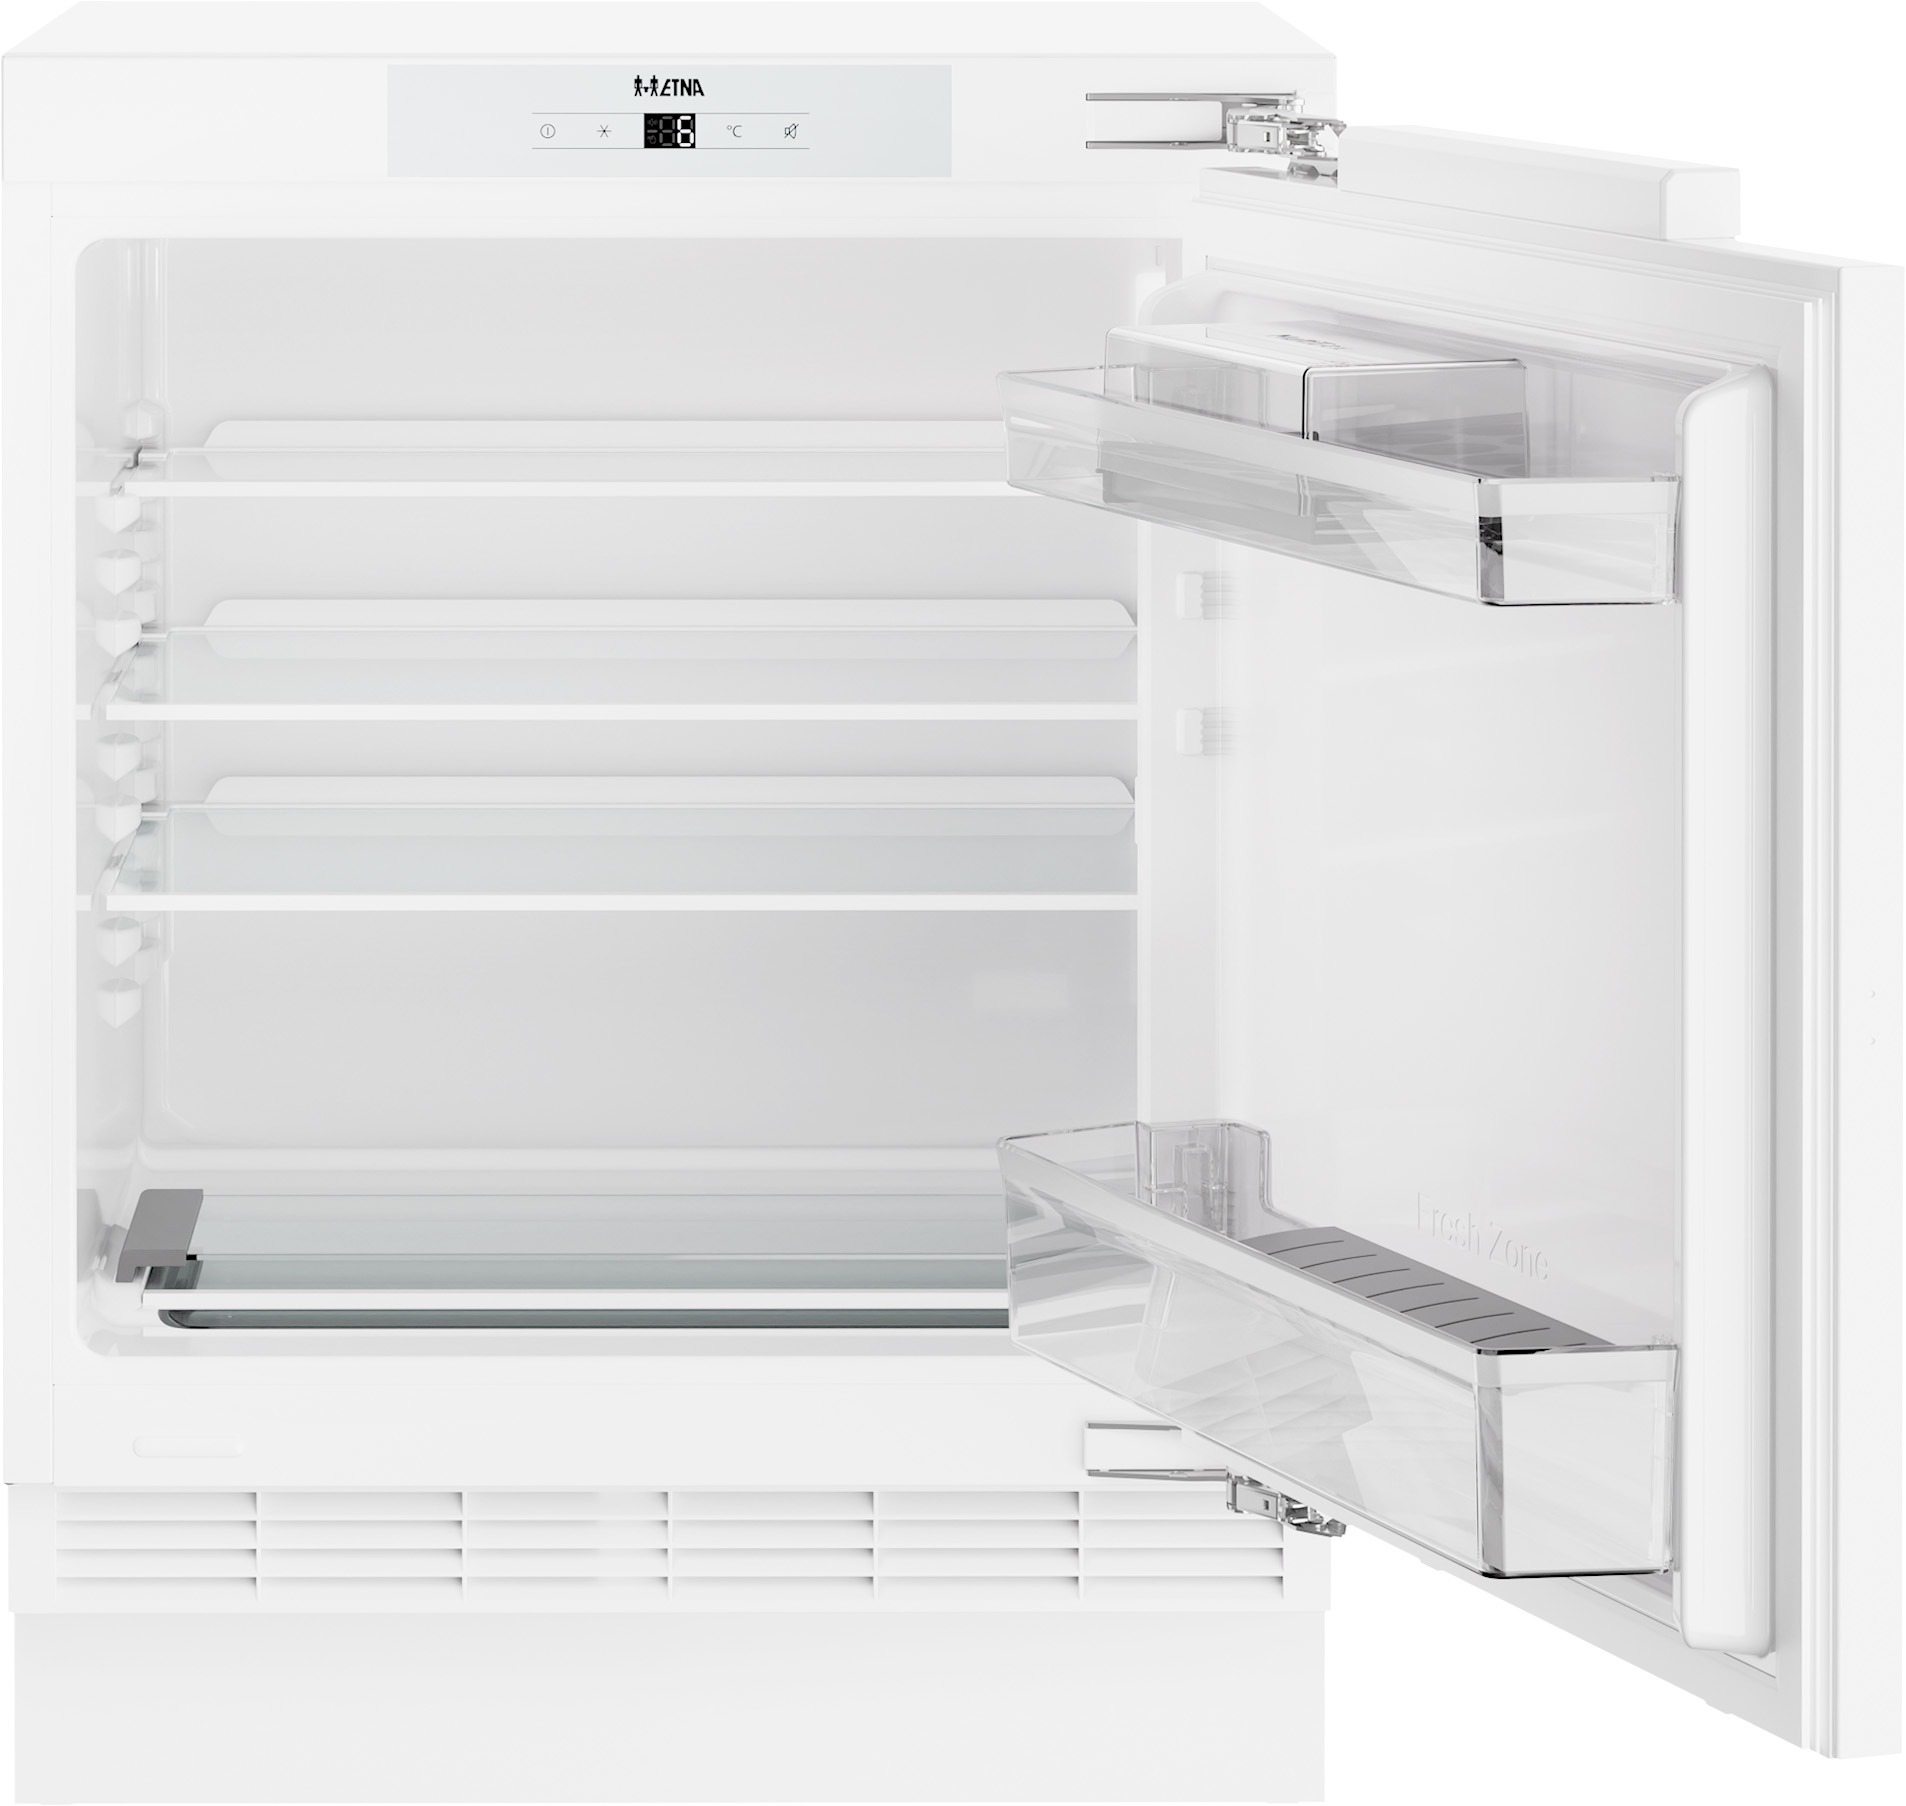 Etna KKO682 Onderbouw koelkast zonder vriezer